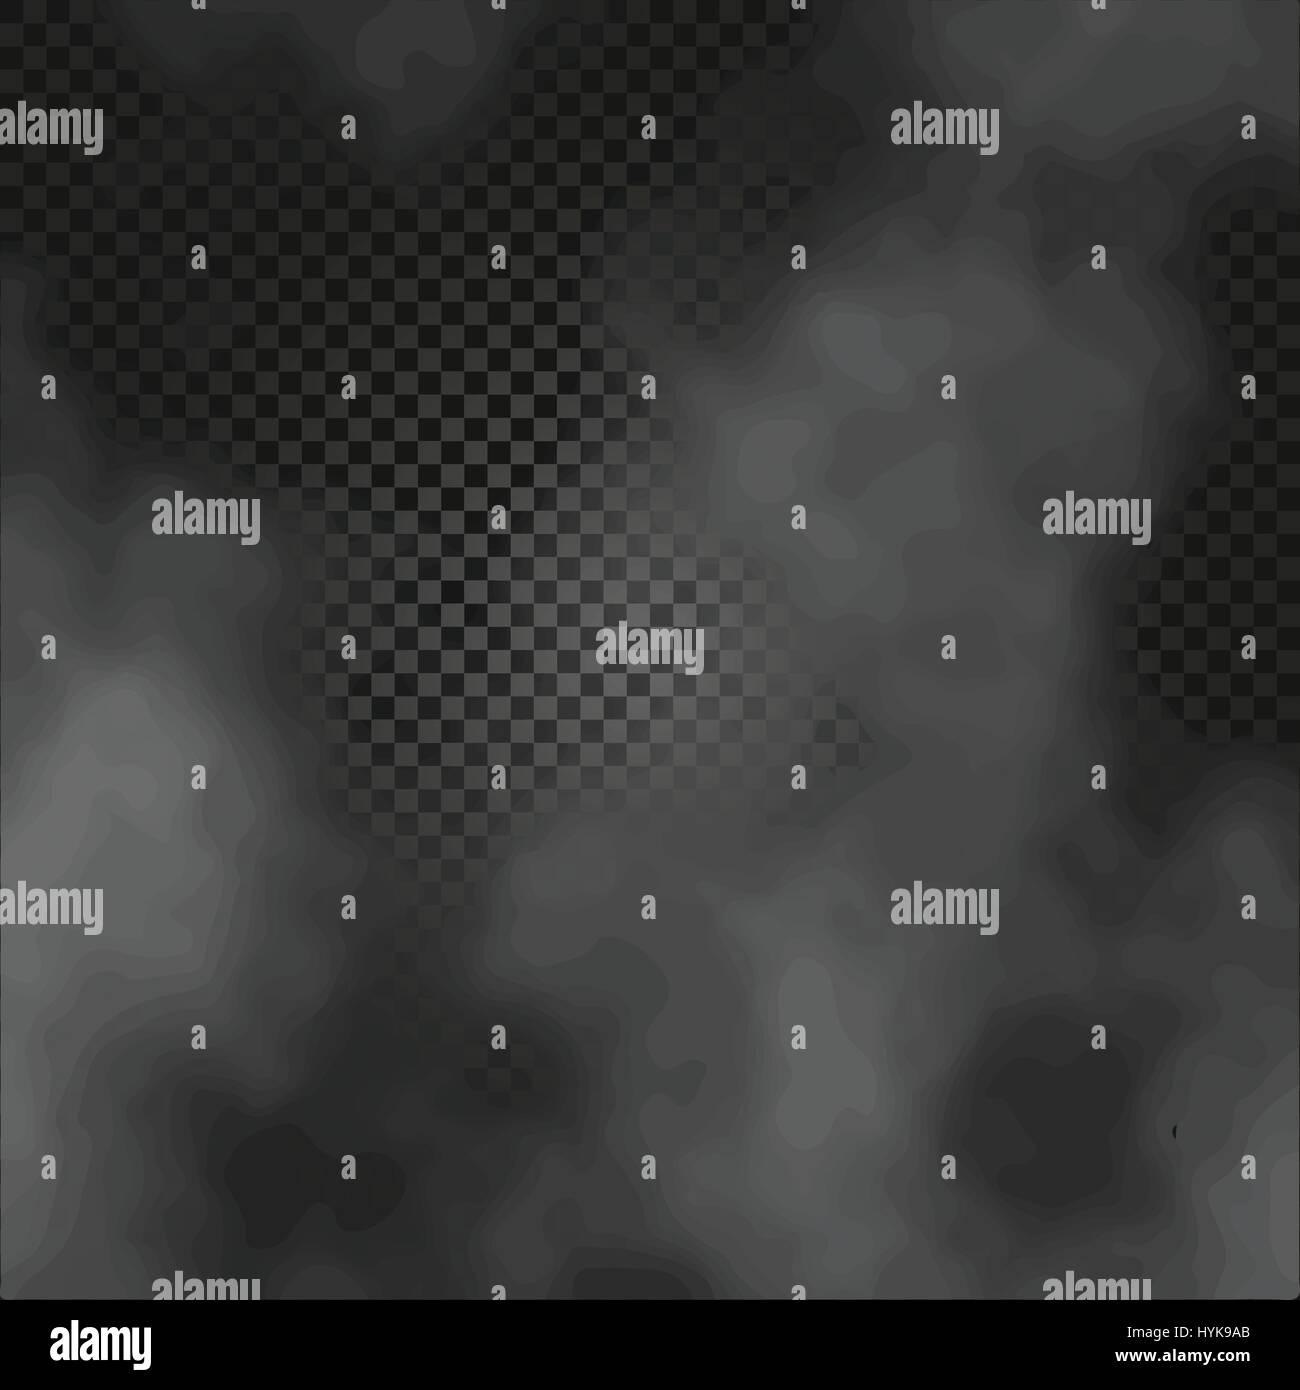 Nebel oder Rauch isolierte transparente Spezialeffekt auf dunklen karierten Hintergrund nebligen Hintergrund Vektor-illustration Stock Vektor